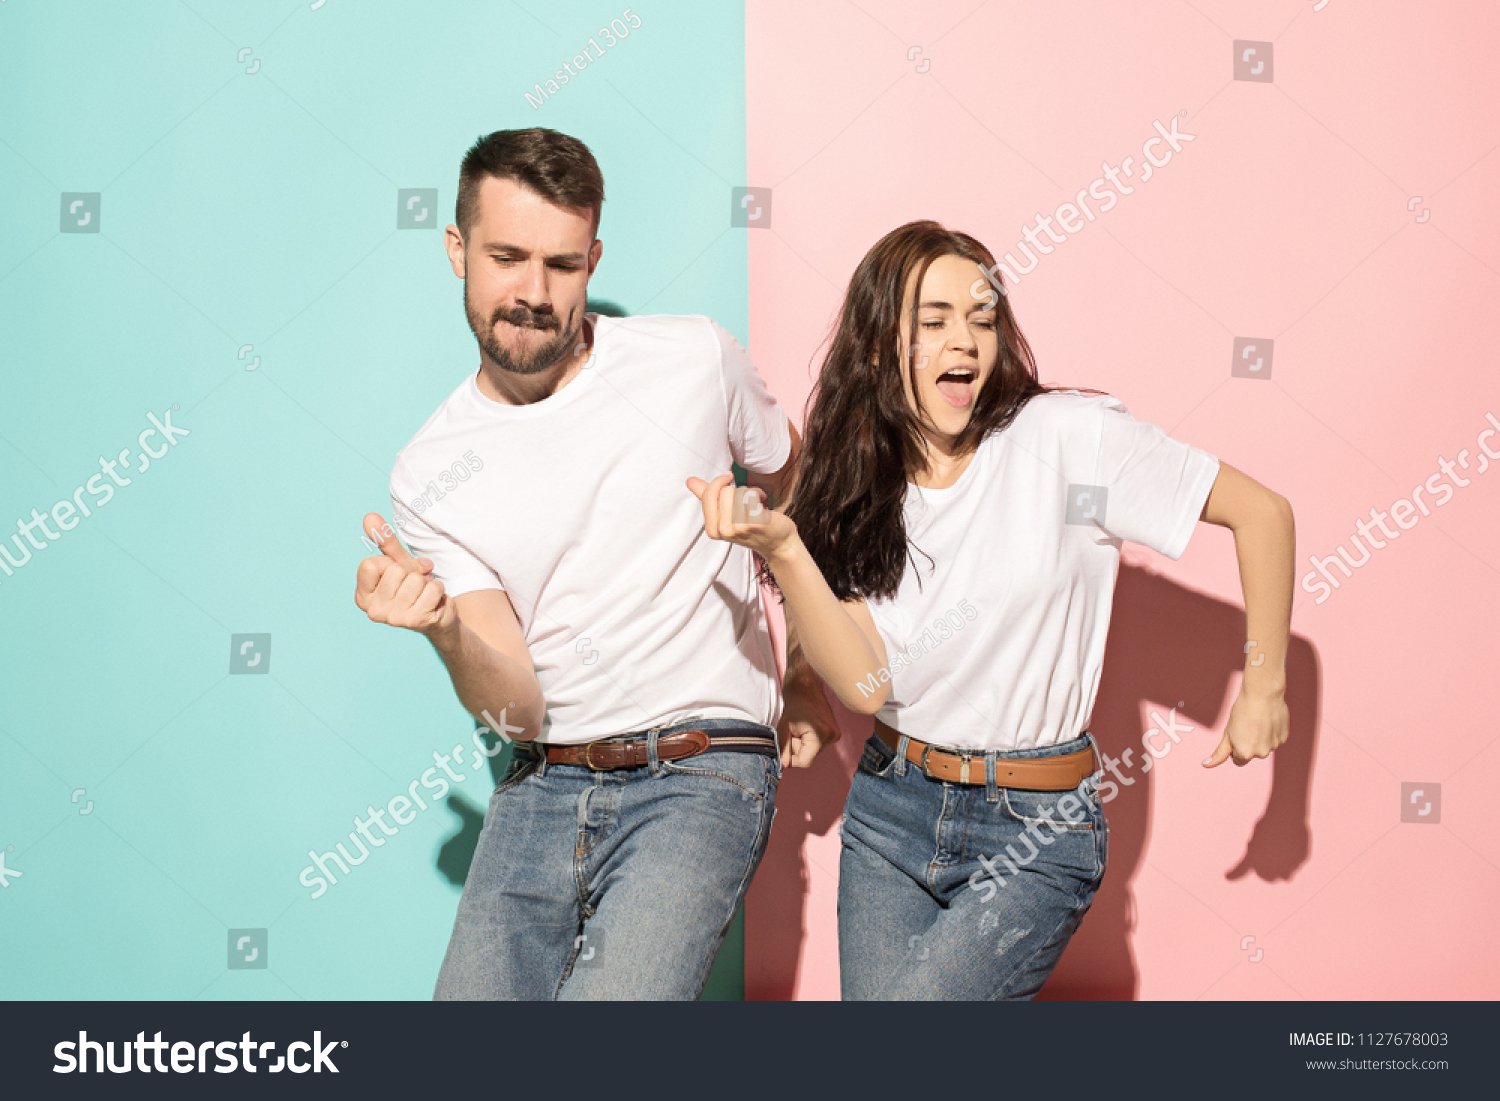 Ein paar junge lustige und glückliche Mann und Frau tanzen Hip Hop im Studio auf blauem und rosafarbenem, trendigem Hintergrund. Menschliche Emotionen, Jugend, Liebe und Lebensstil – Stockfoto